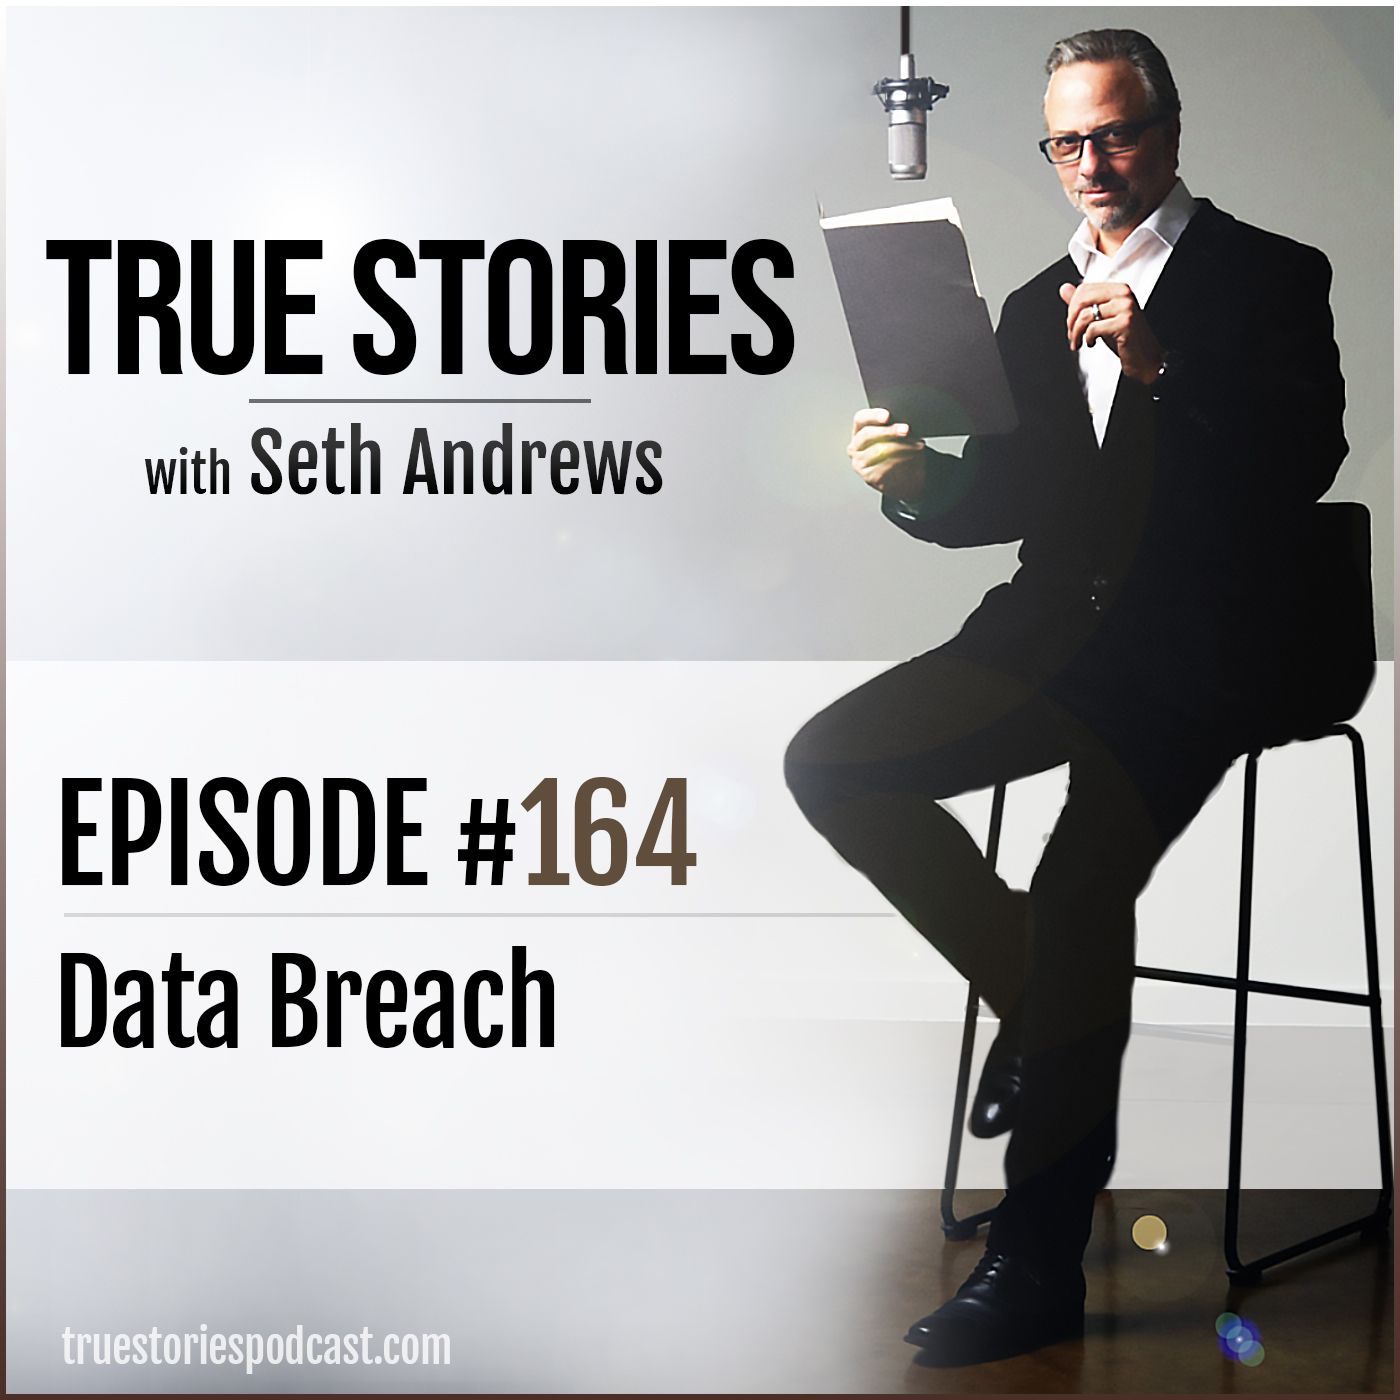 True Stories #164 - Data Breach